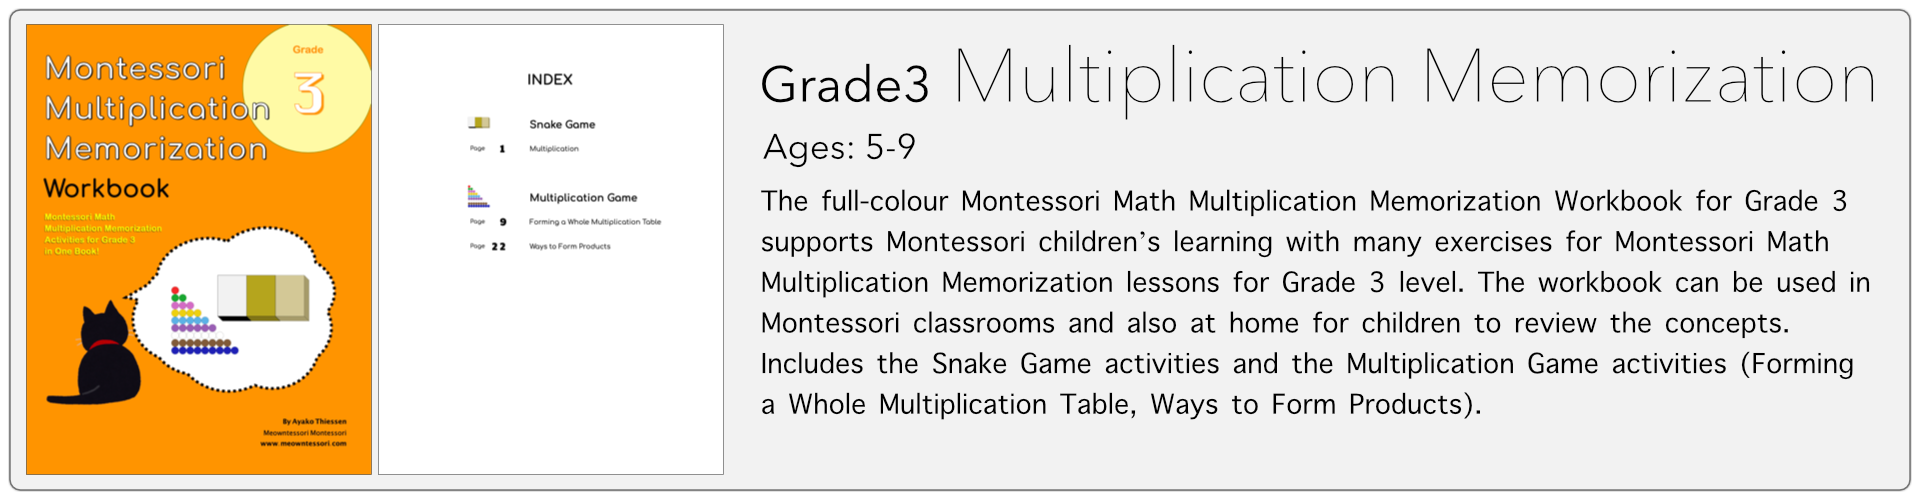 grade3 multiplication memorization